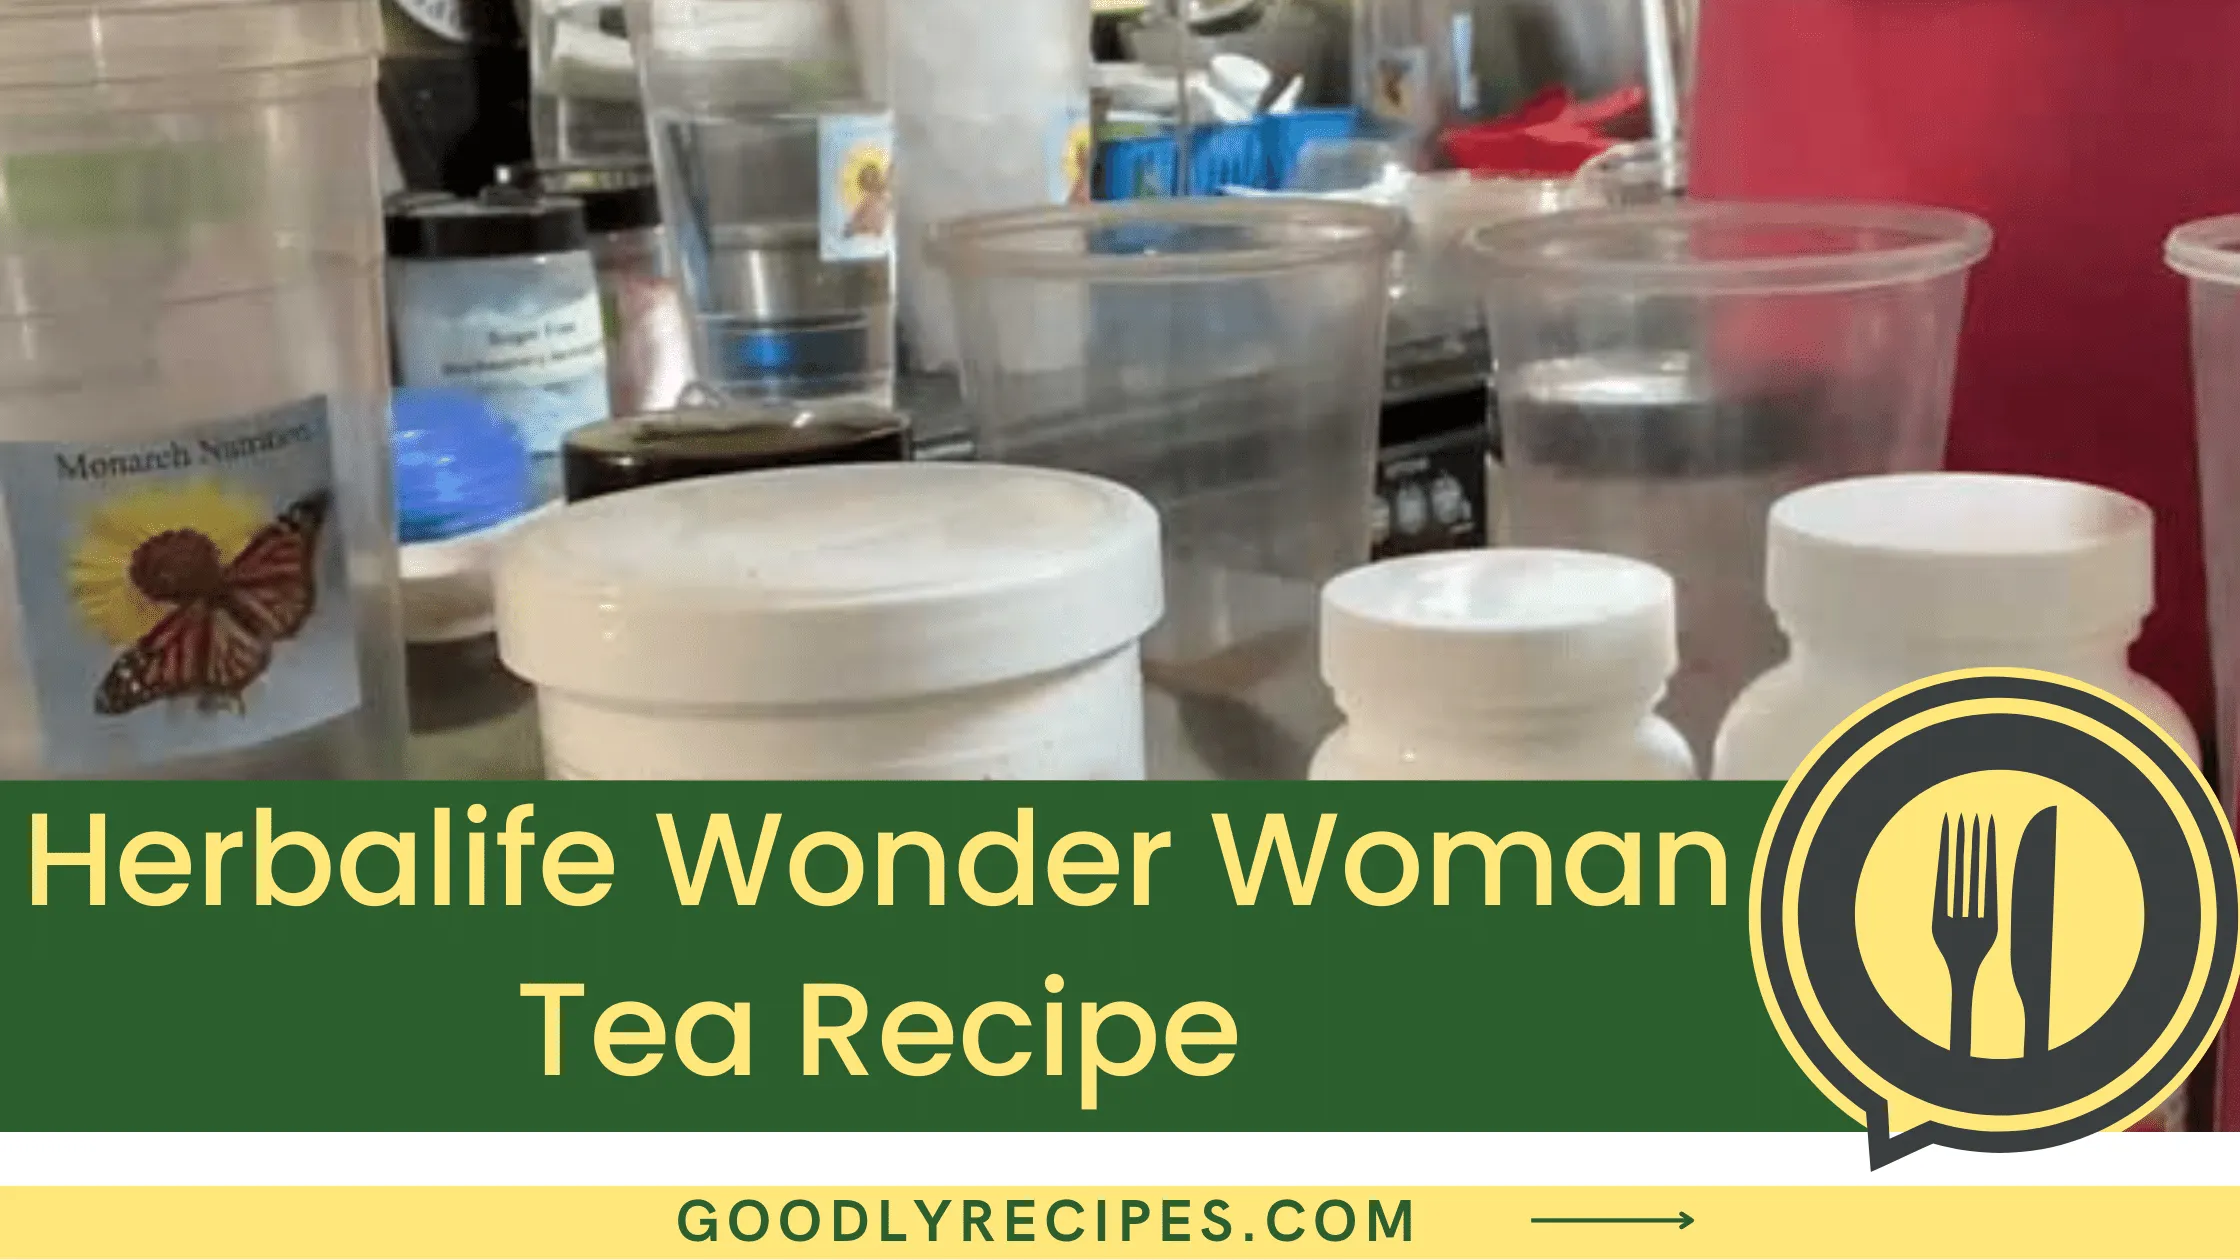 Herbalife Wonder Woman Tea Recipe - For Food Lovers